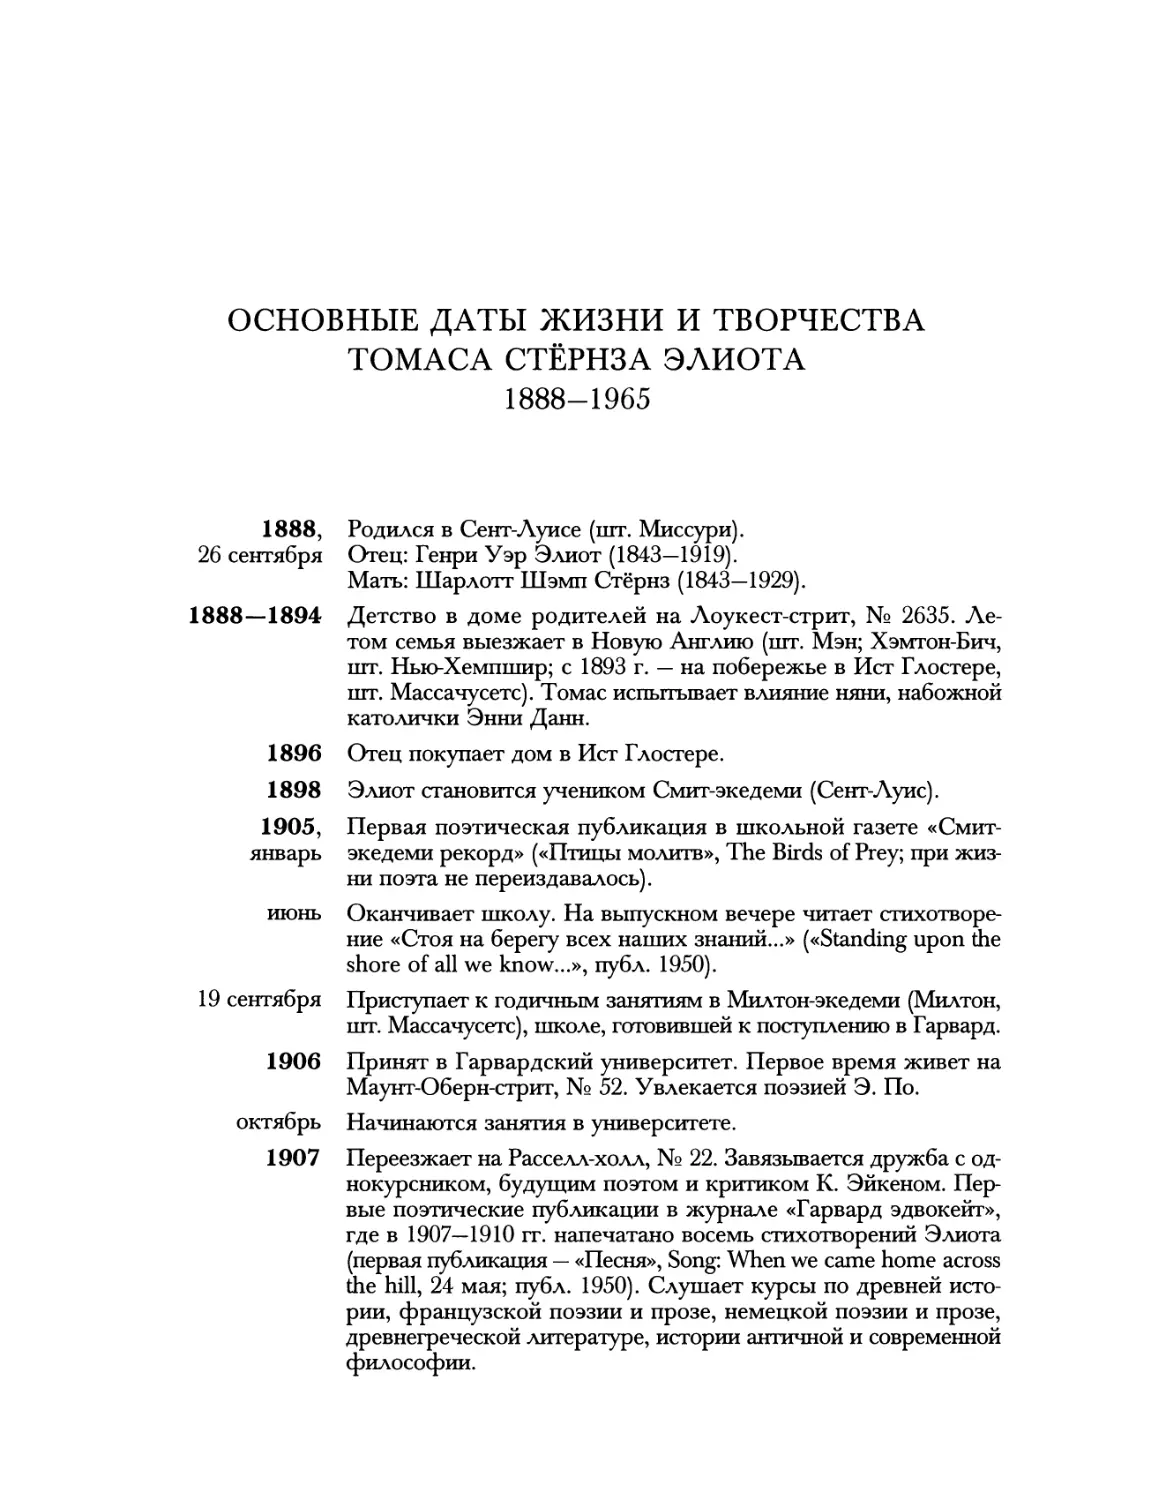 Основные даты жизни и творчества Томаса Стёрнза Элиота. 1888—1965